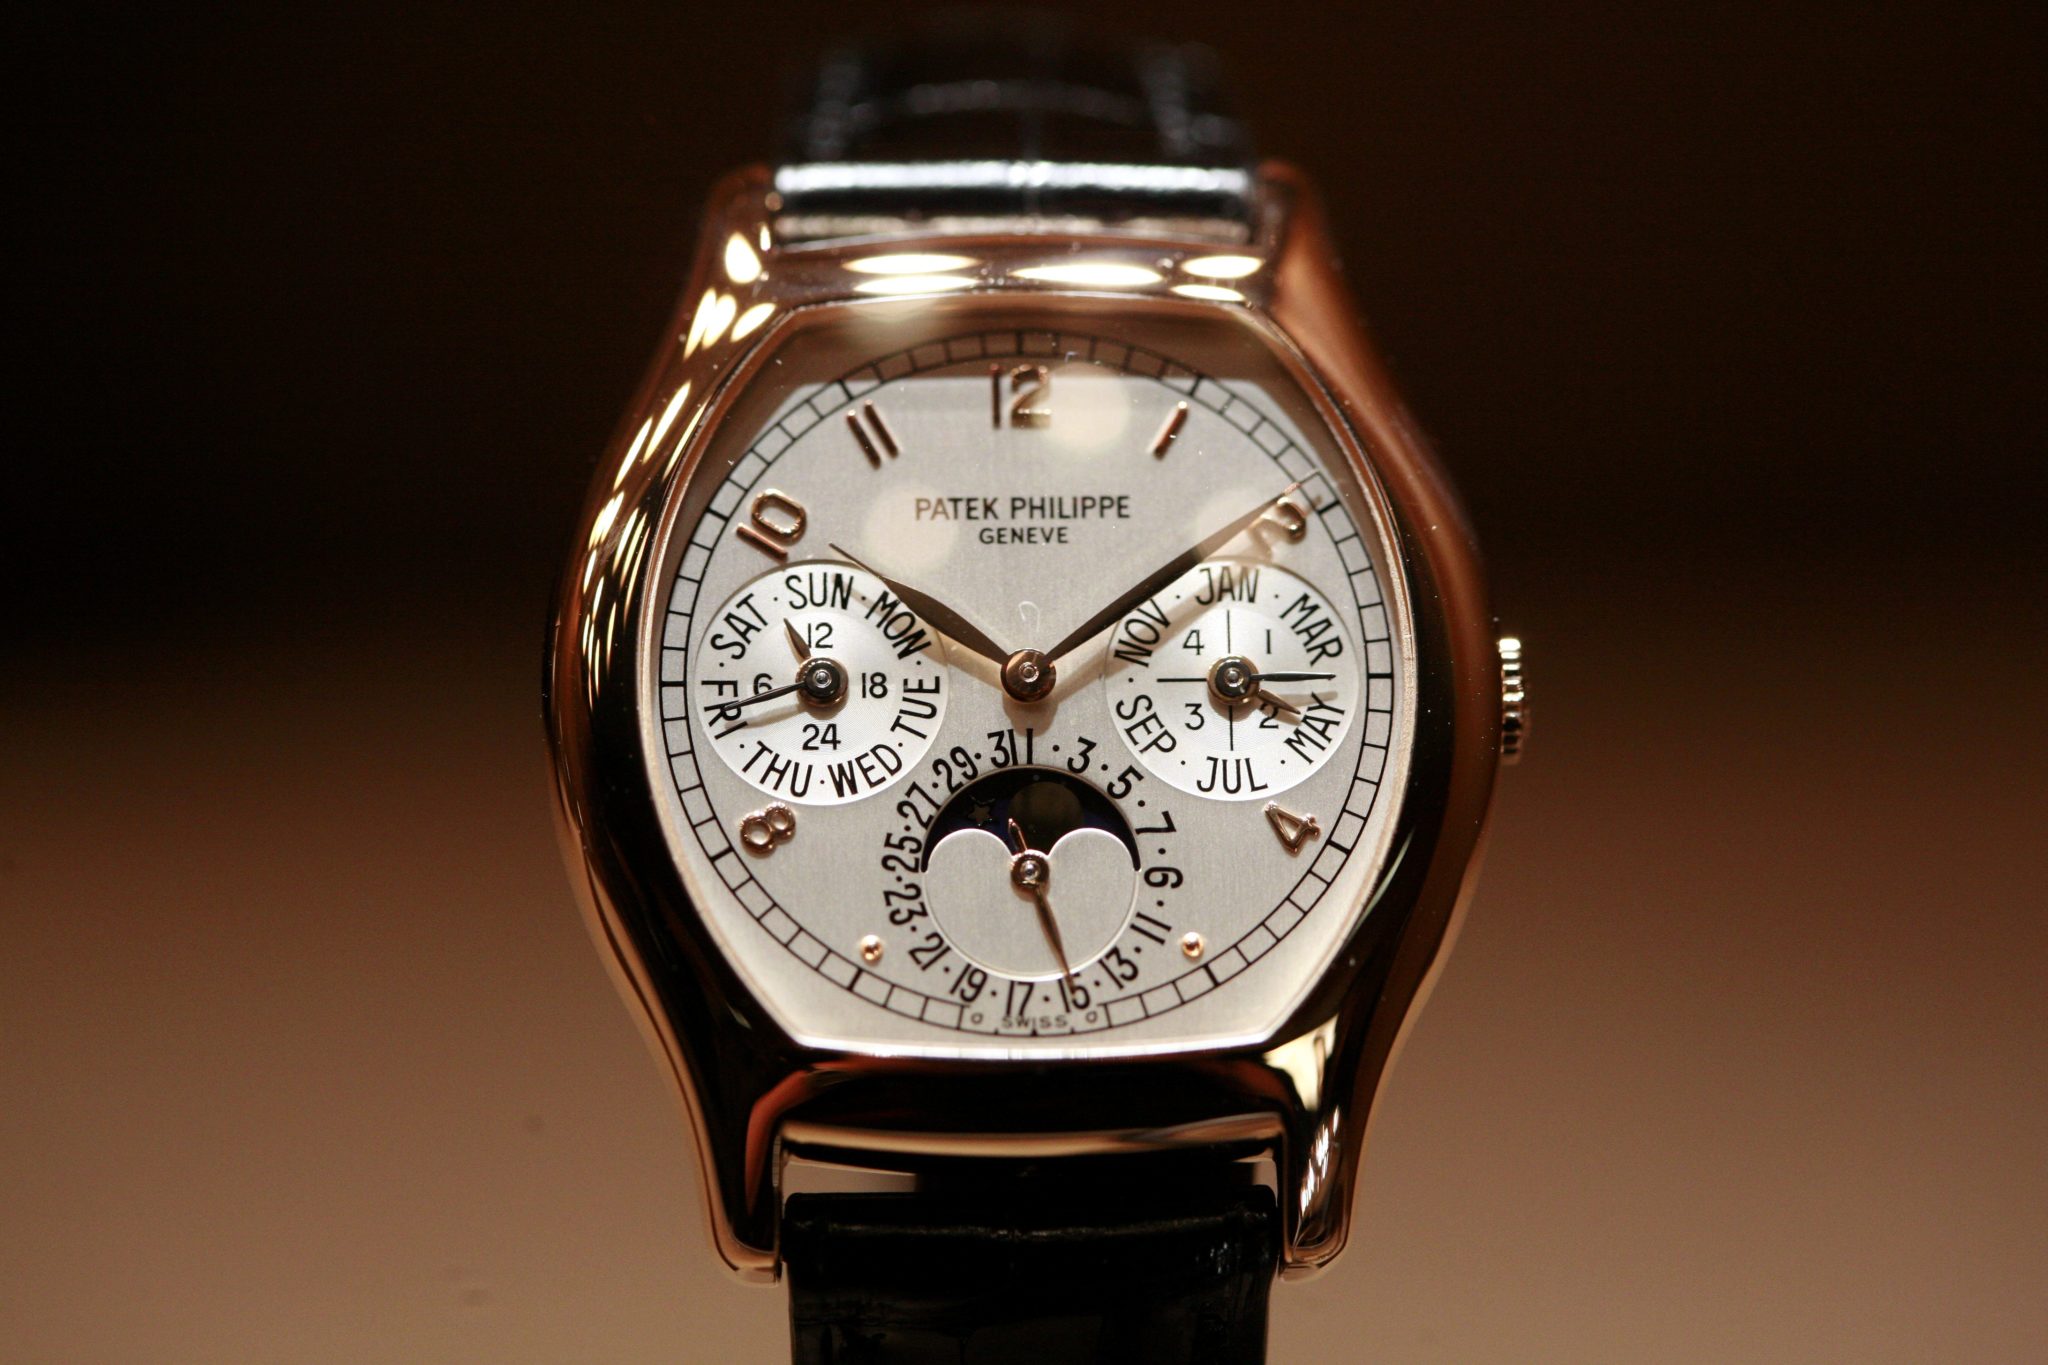 otro ejemplo de uno de los relojes más caros del mundo a partir de 2022 - 2023  